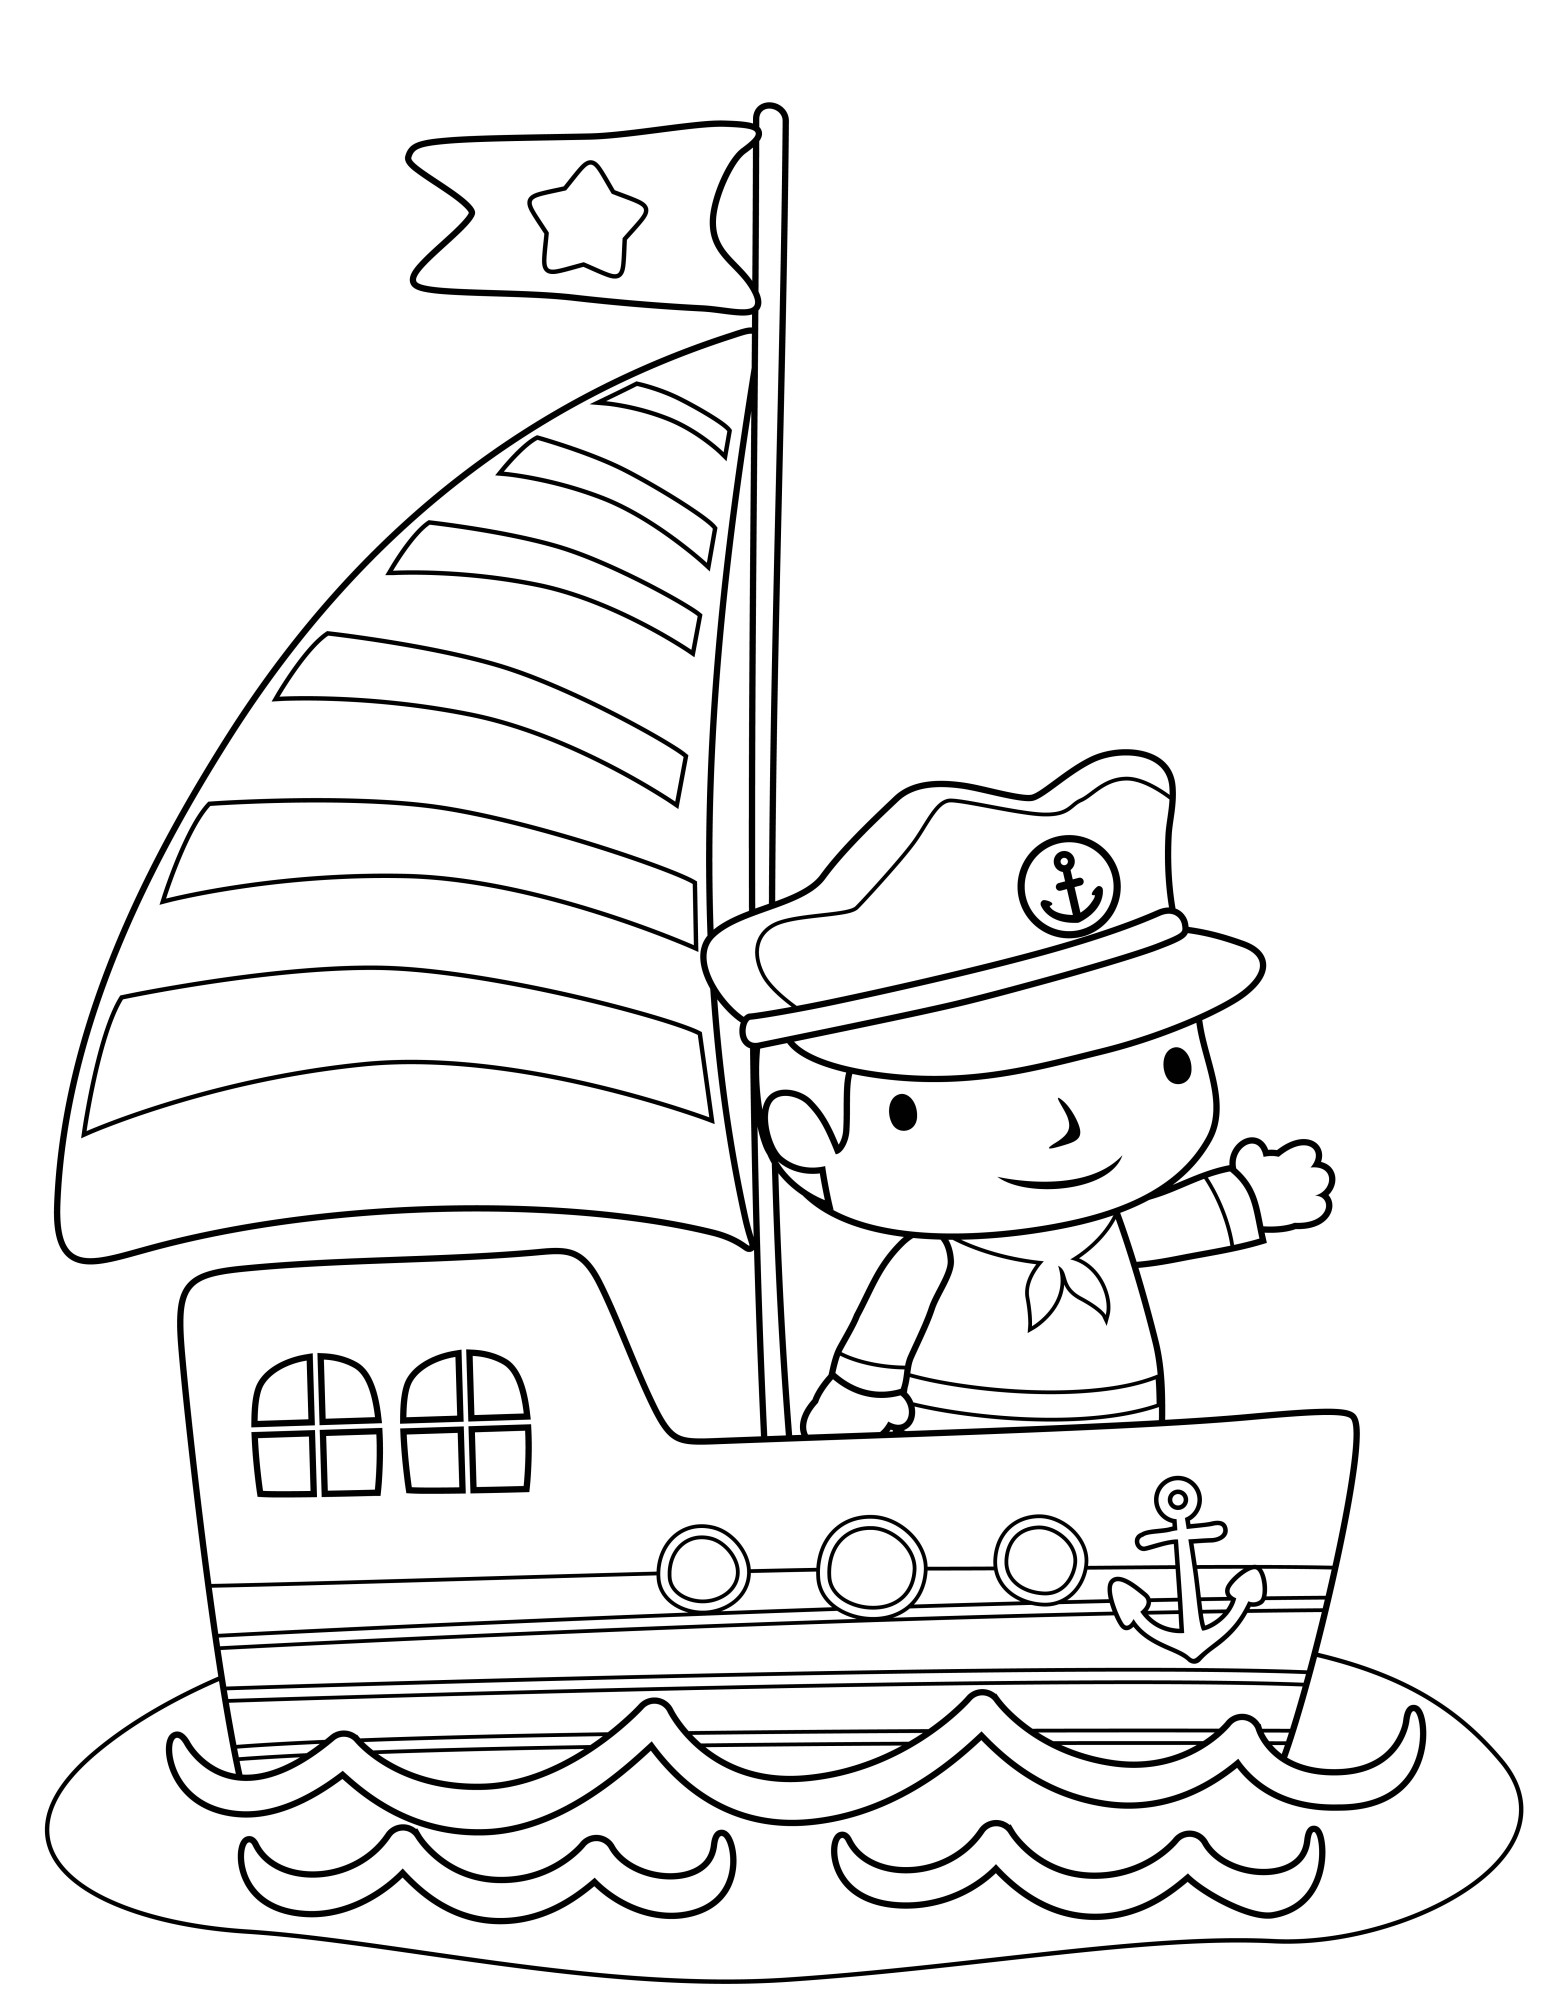 Раскраска для детей: корабль в море с капитаном на борту